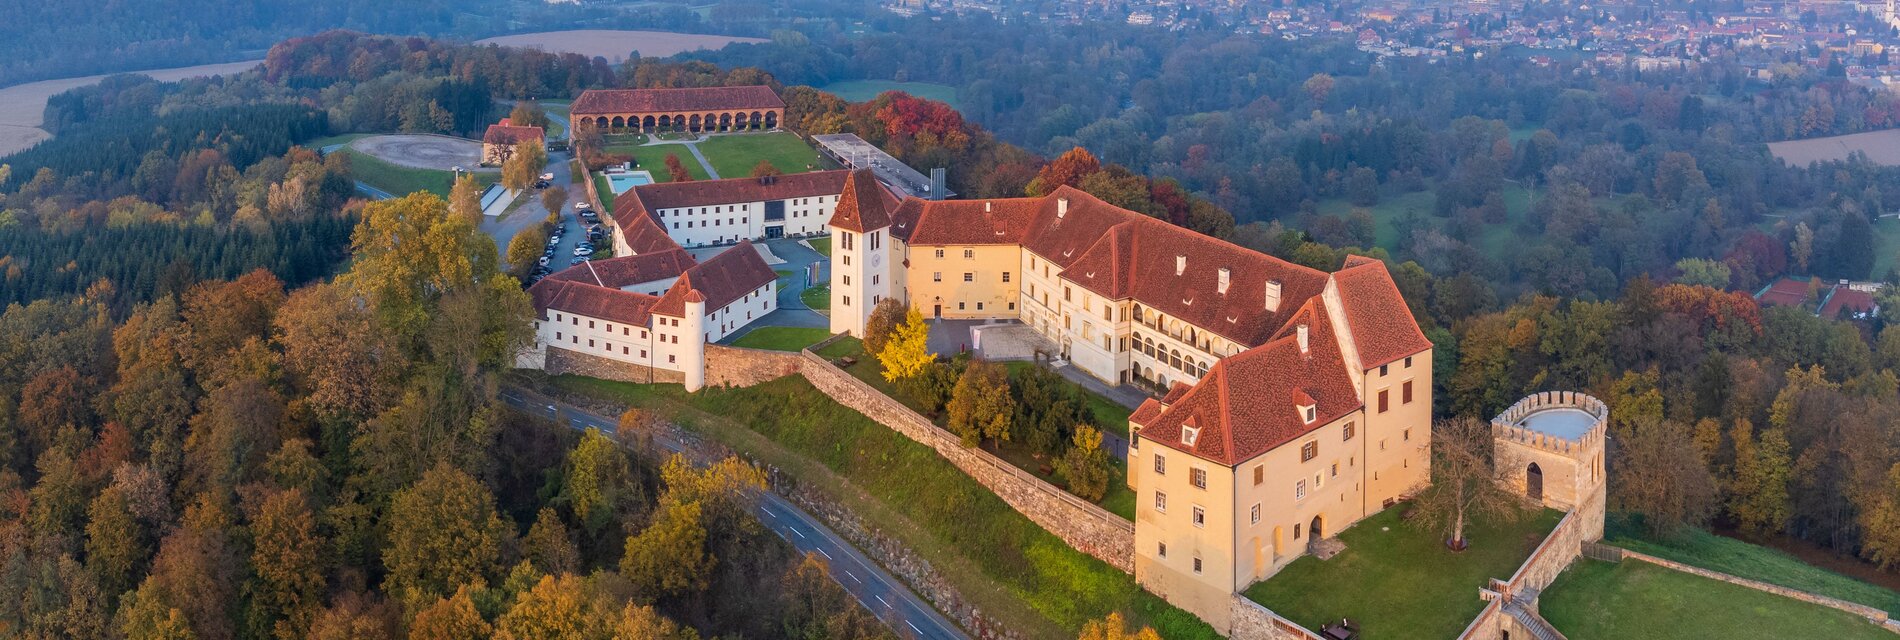 Map Schloss Seggau-Herbst-Querformat ©Janez Kotar